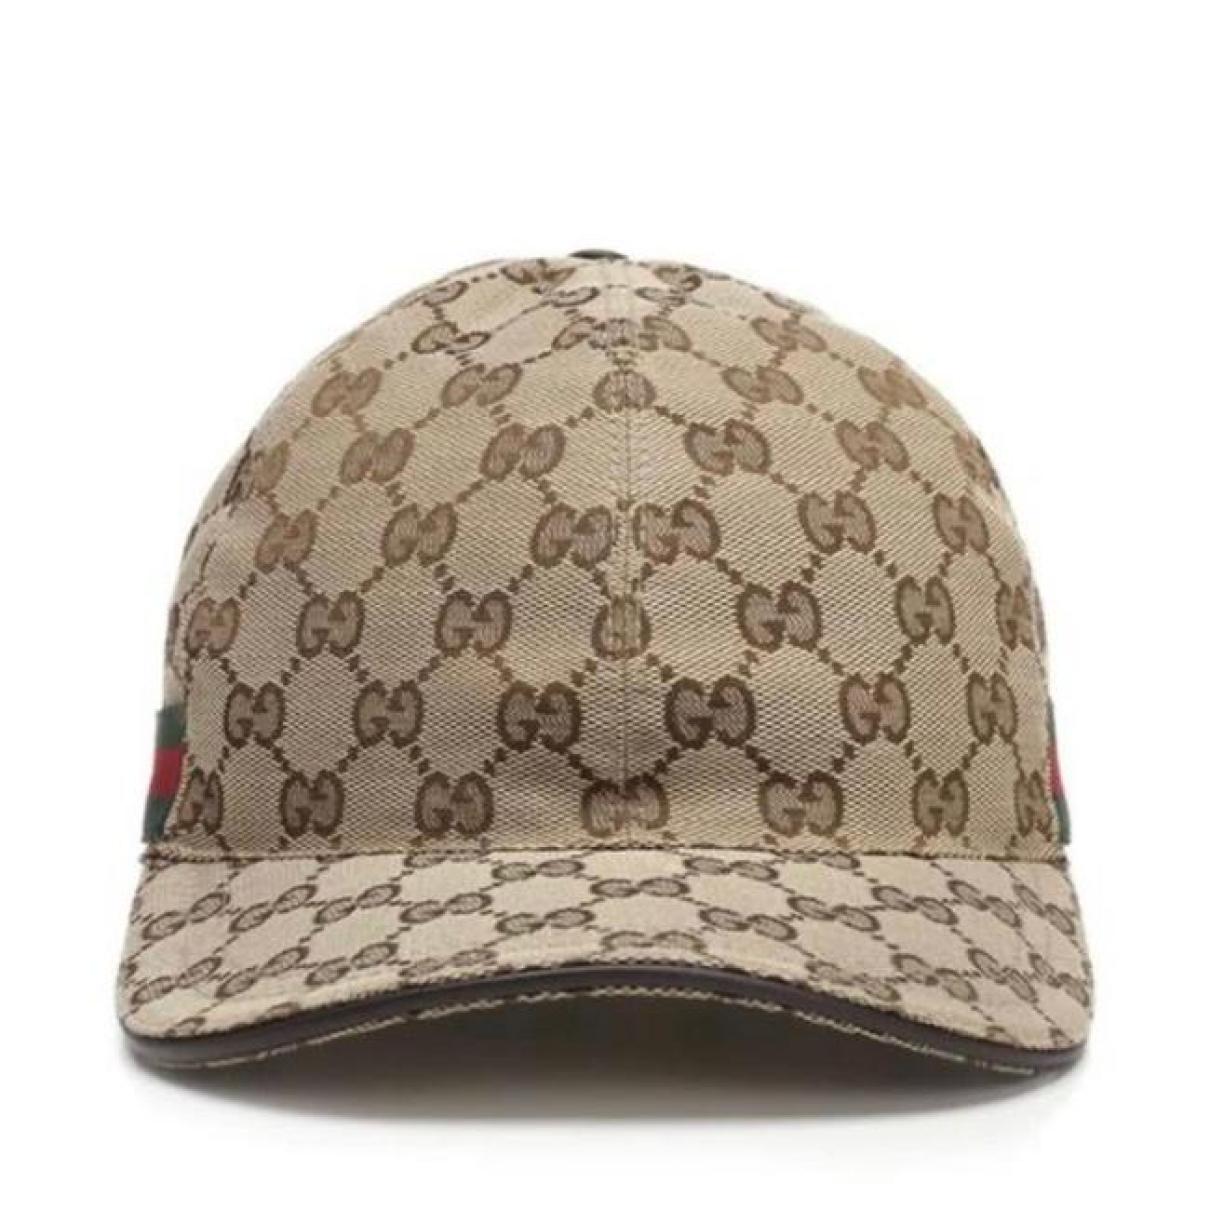 Leather cap - 3